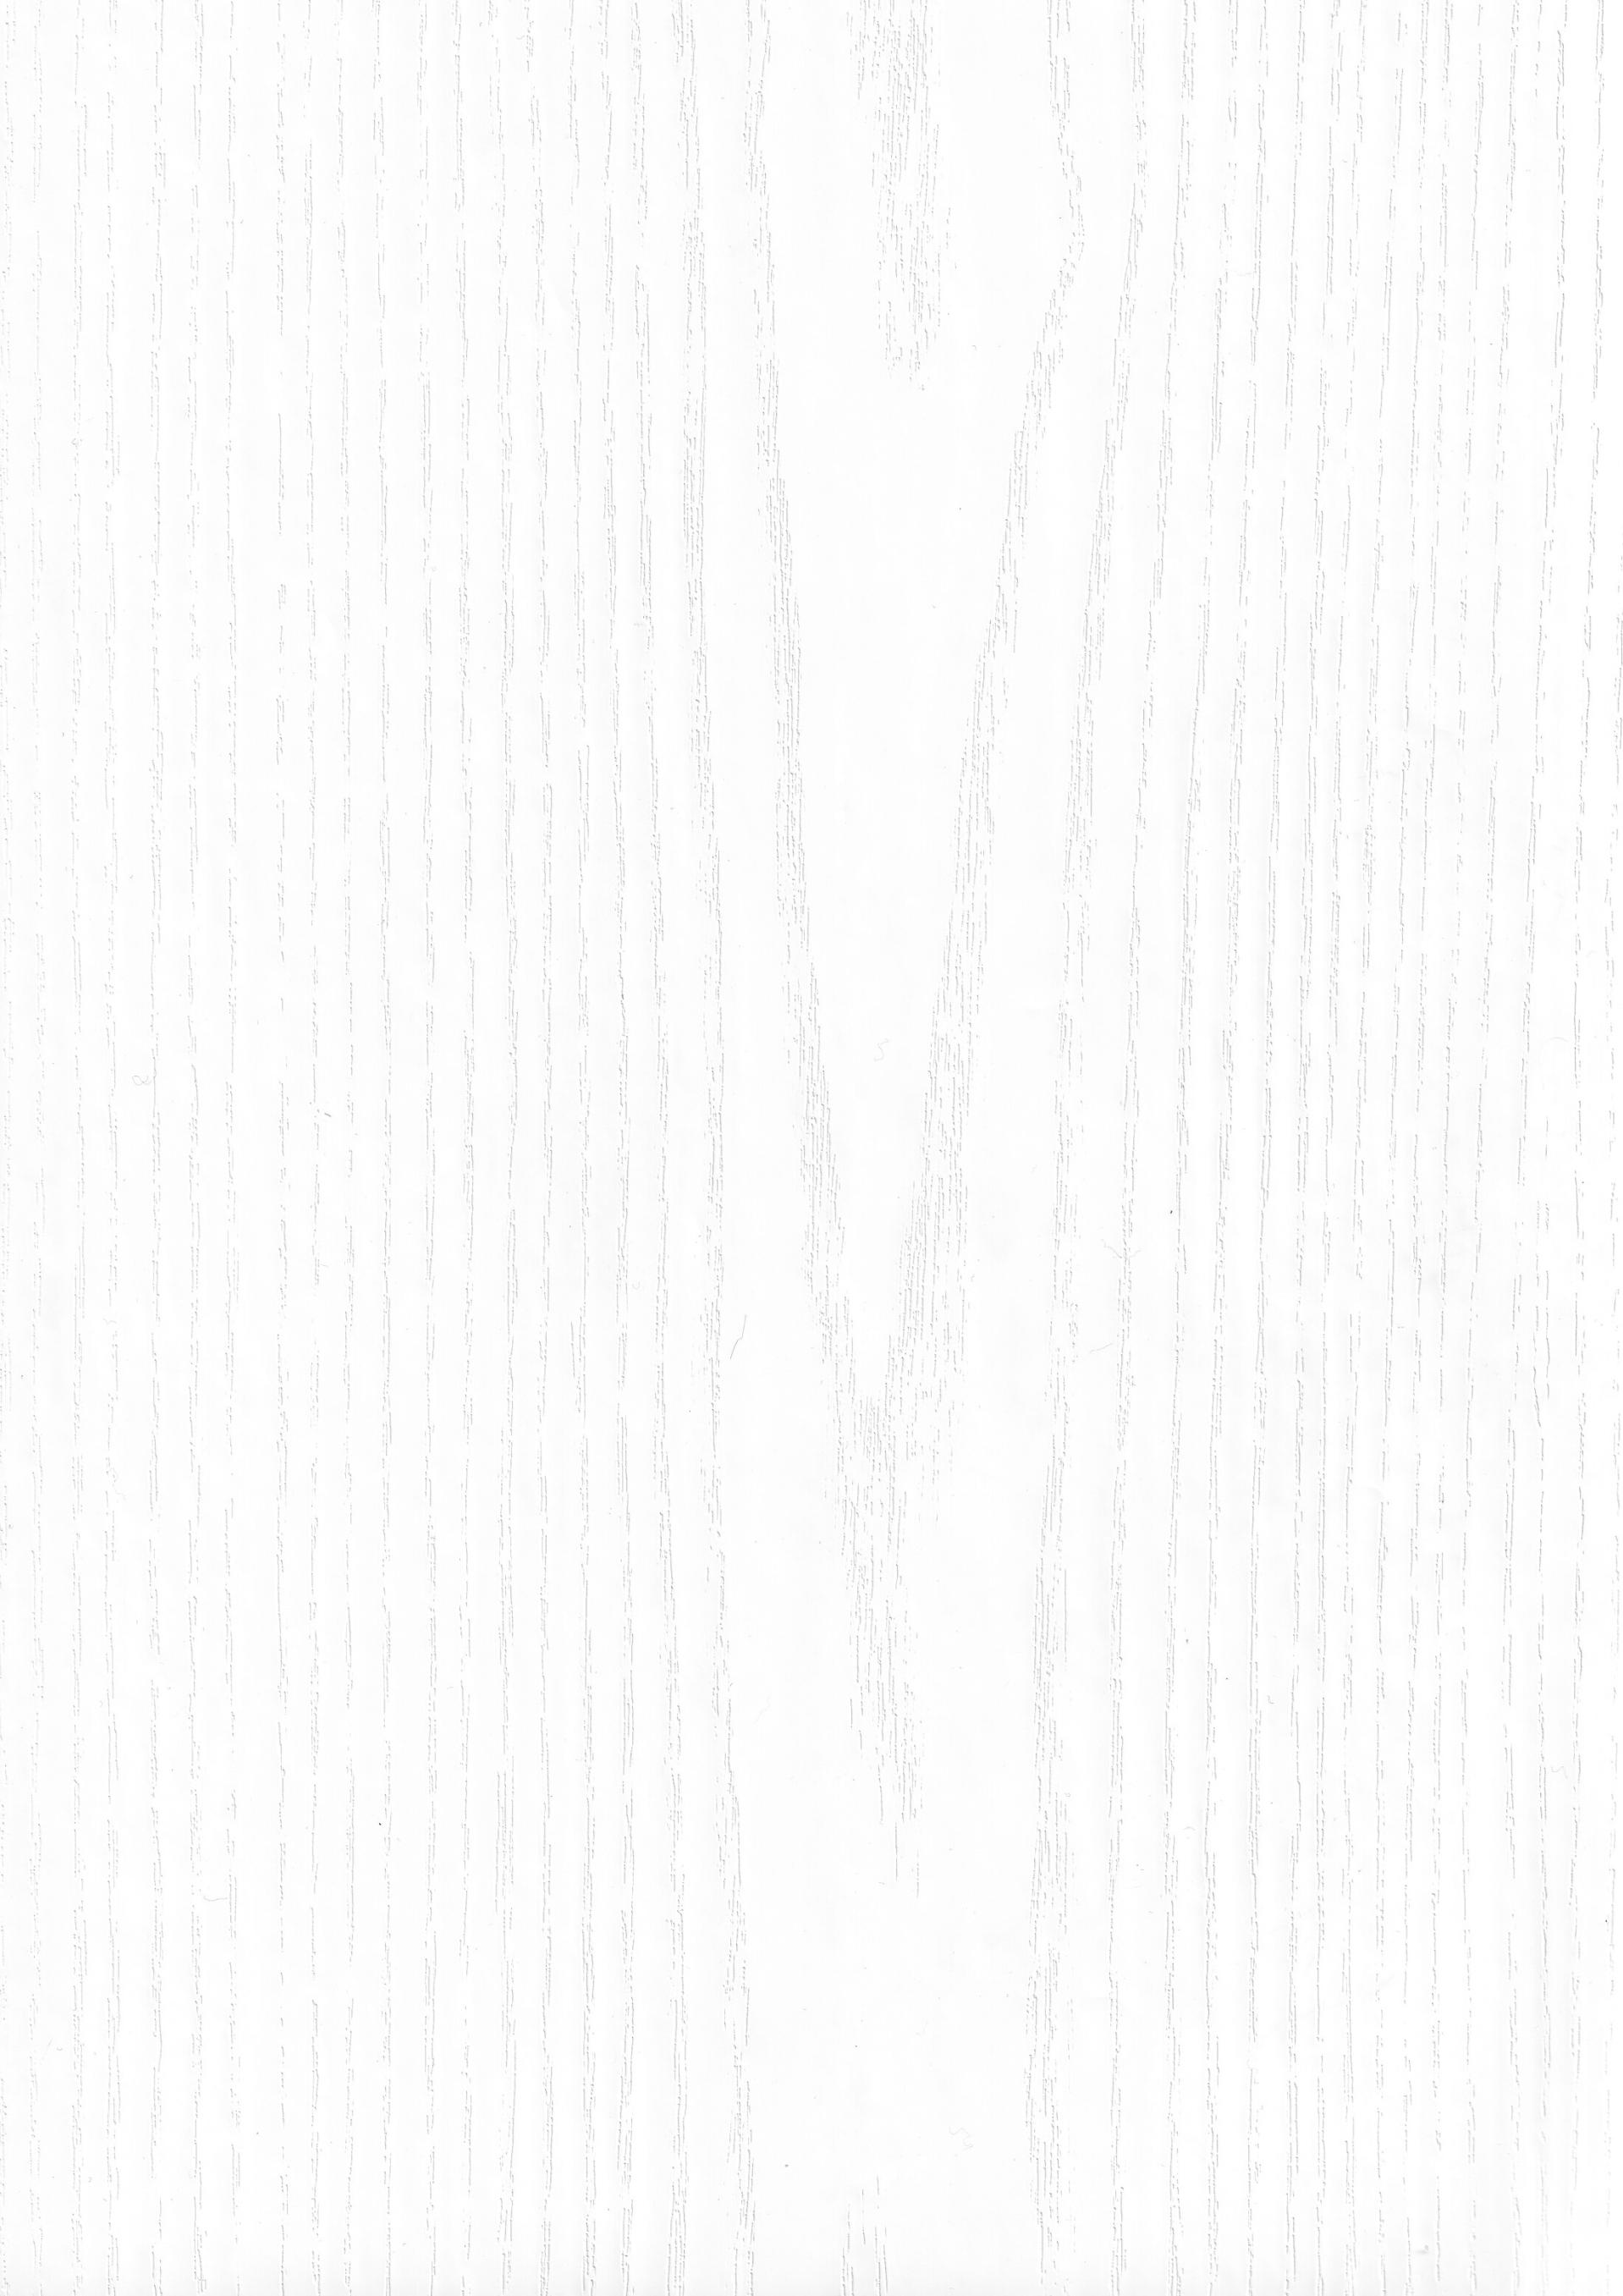 ПВХ пленка LEGNO WHITE из каталога MULTIMA by IMAWELL | ПВХ пленка БЕЛЫЙ ЛЕГНО европейского качества для мебели и дверей от ЛАМИС | Каталог ПВХ пленок MULTIMA by IMAWELL